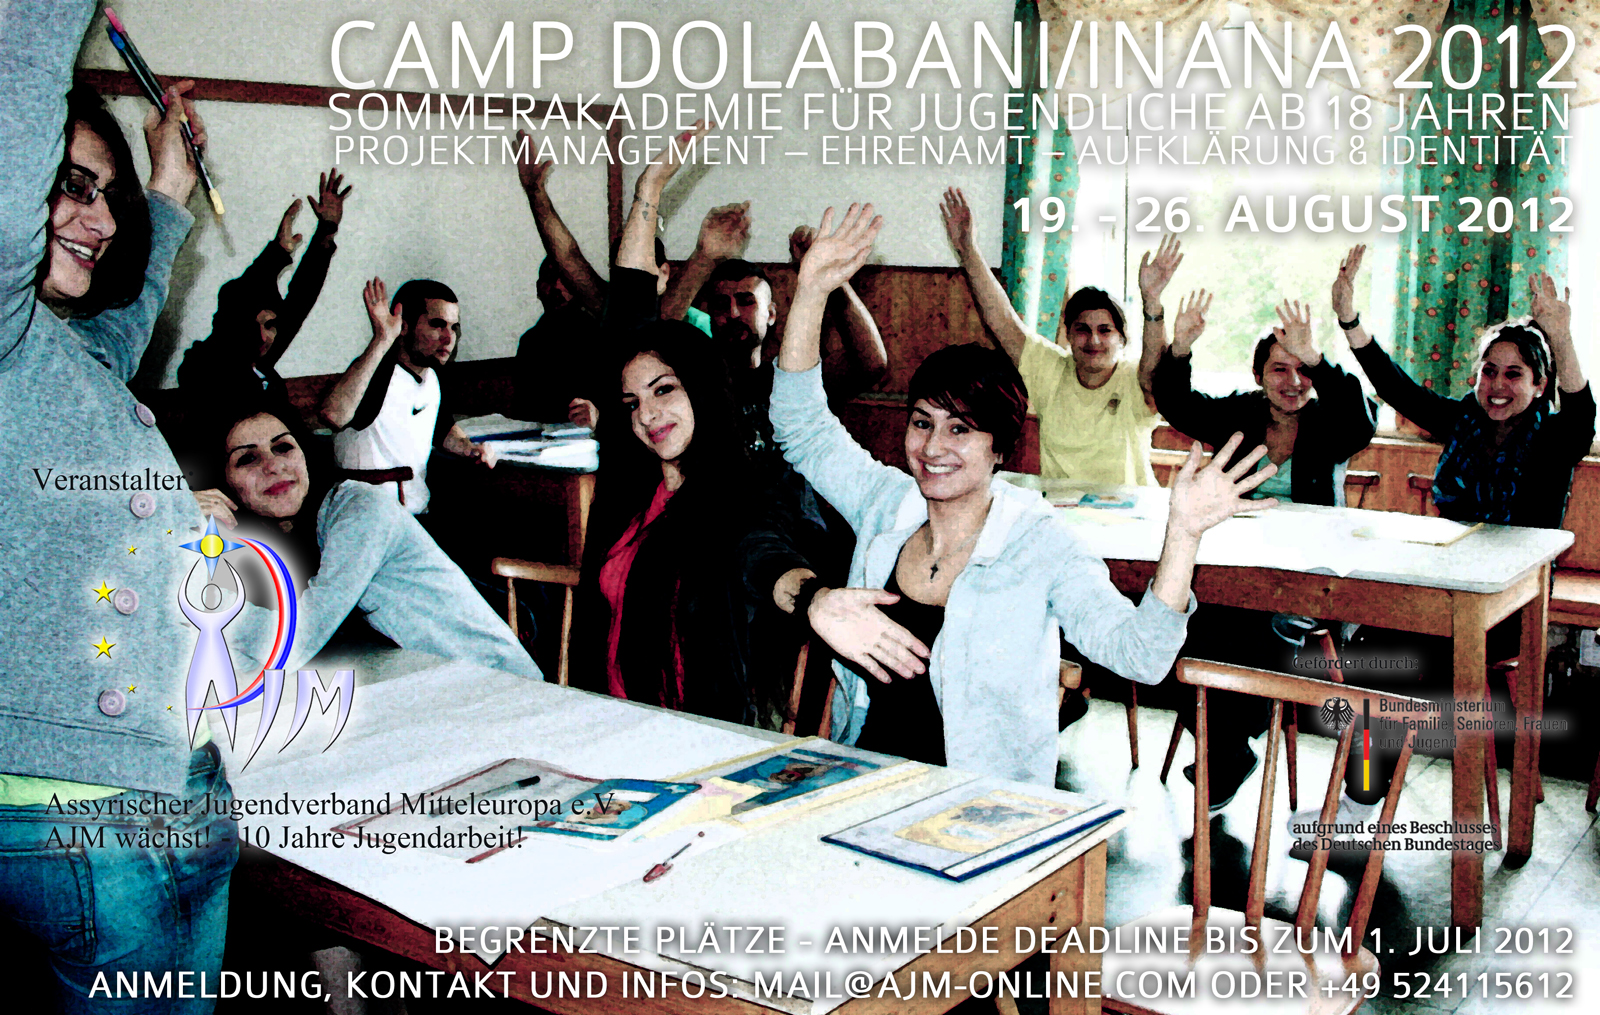 Camp Dolabani/Inana 2012